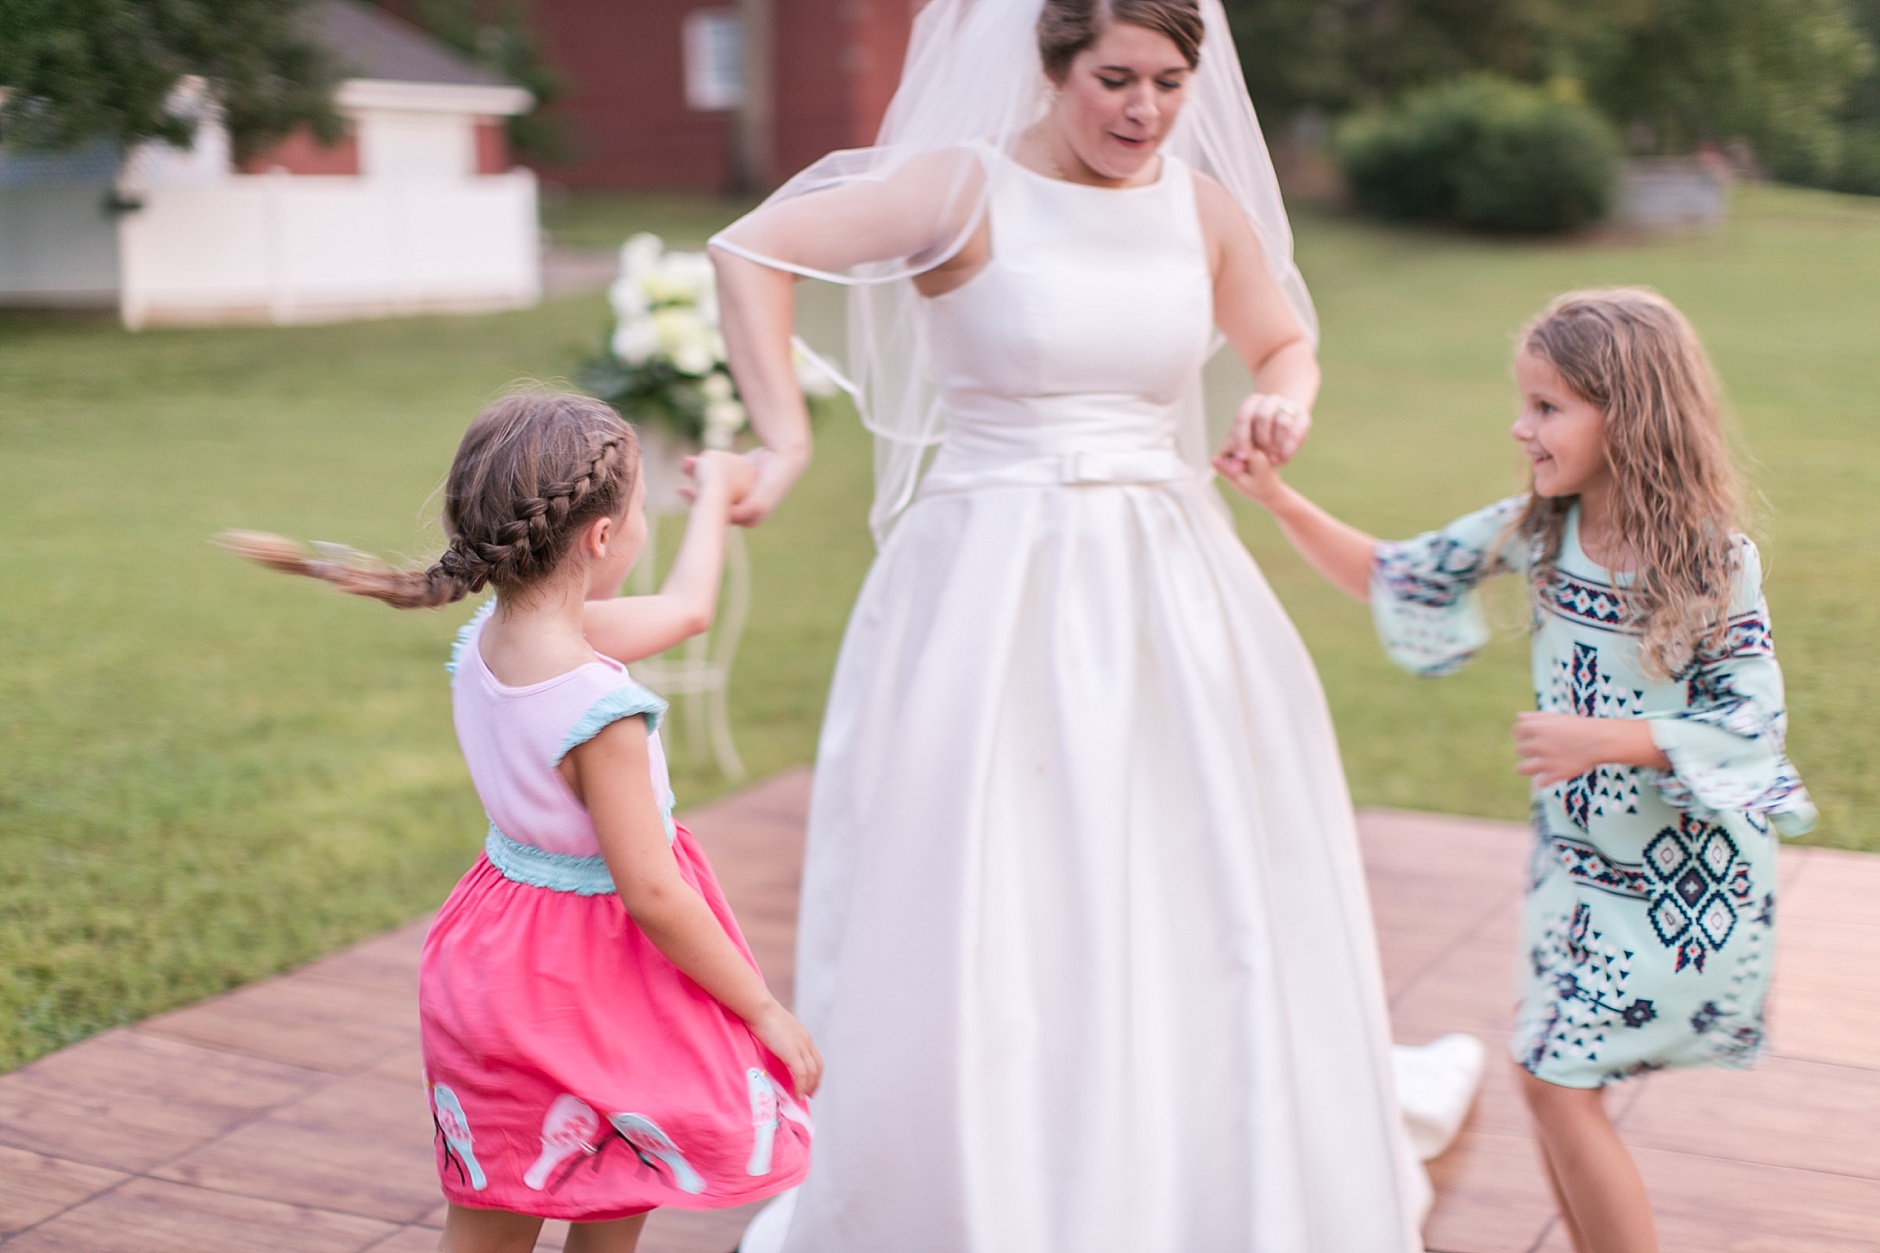 A Summer Backyard Murray Kentucky Wedding by Rachael Houser Photography